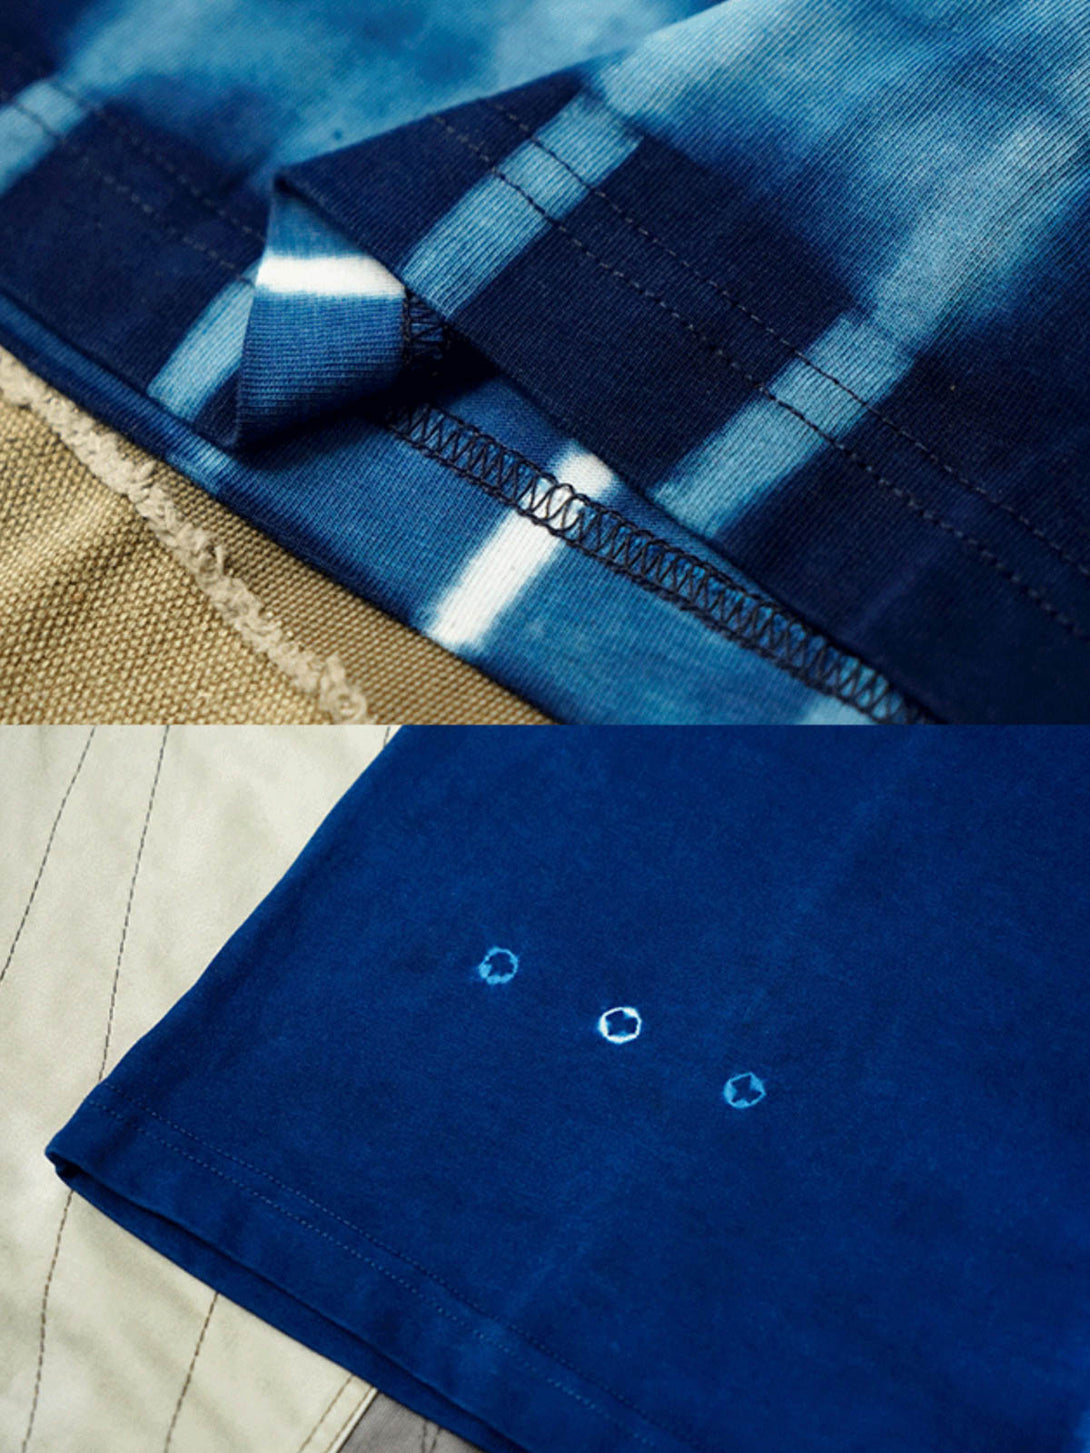 ディテールクローズアップ：手作り藍染めタイダイTシャツの生命力あふれるパターンと深い藍色、伝統的な手作り技術